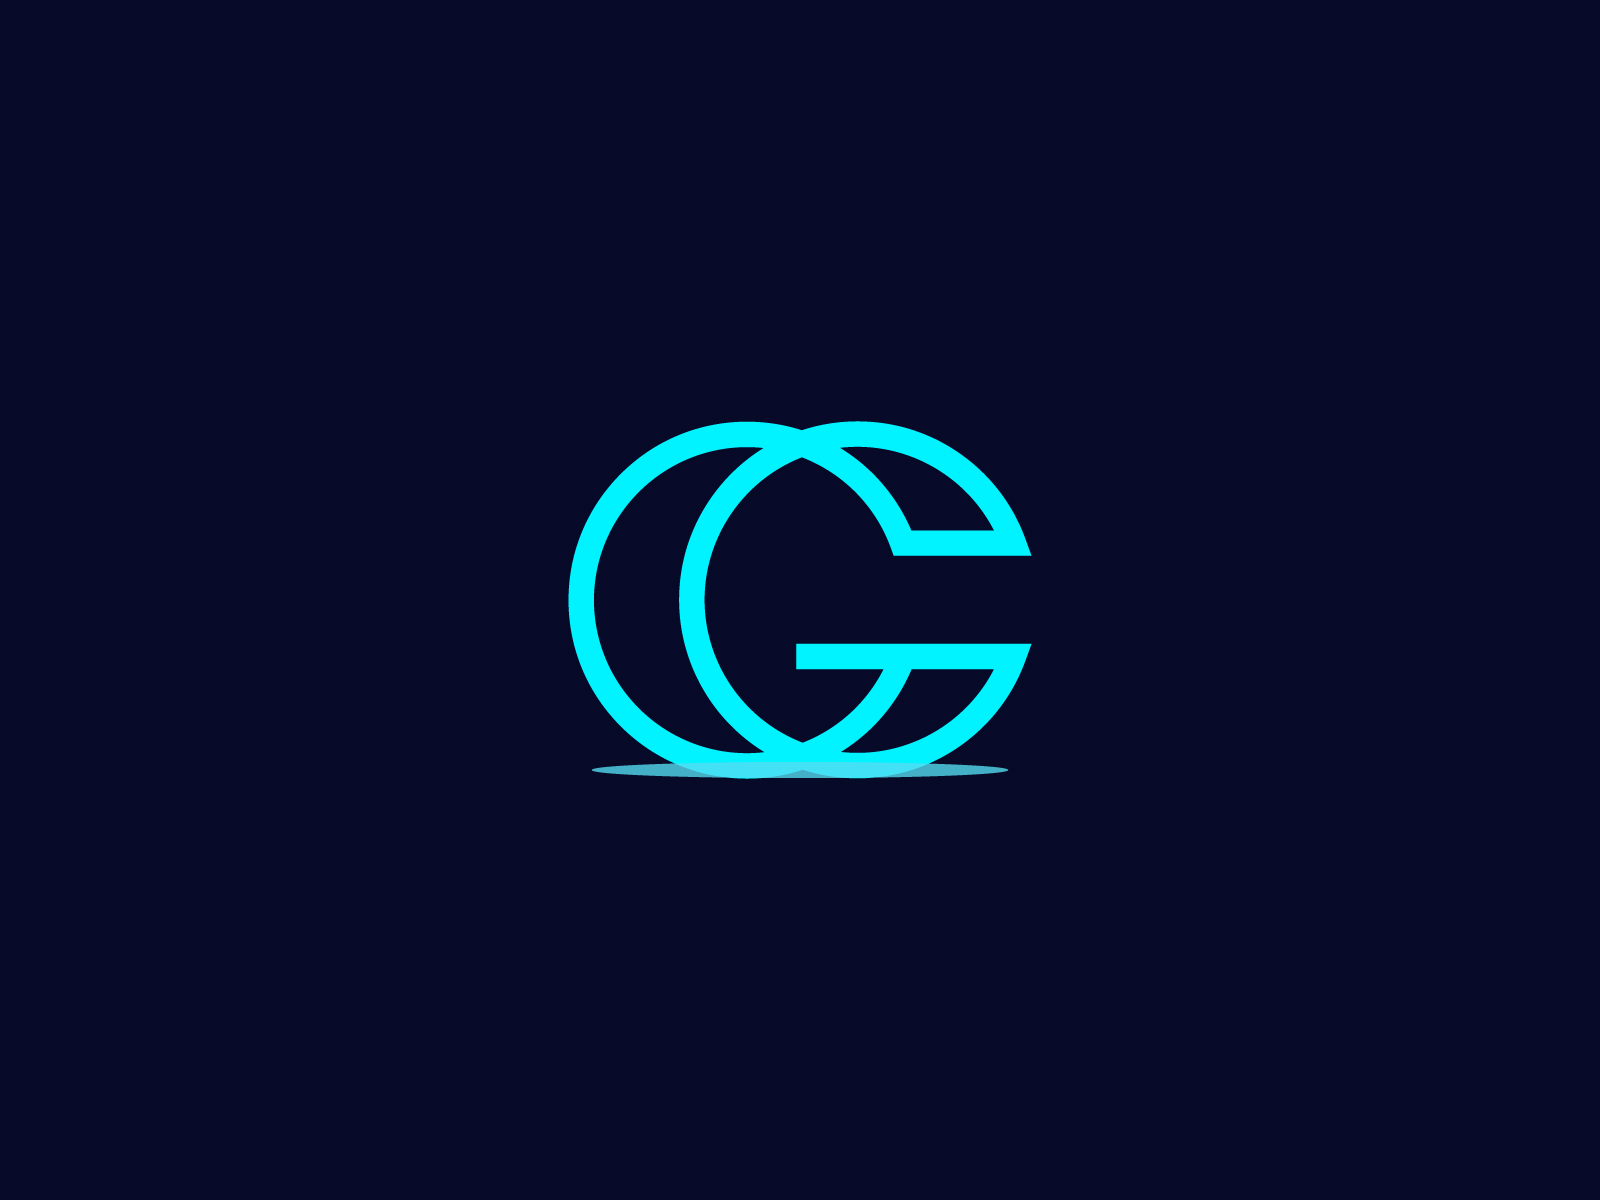 G c cg. CG лого. Логотип c g. Логотип CG"D. Логотип с буквами CG.